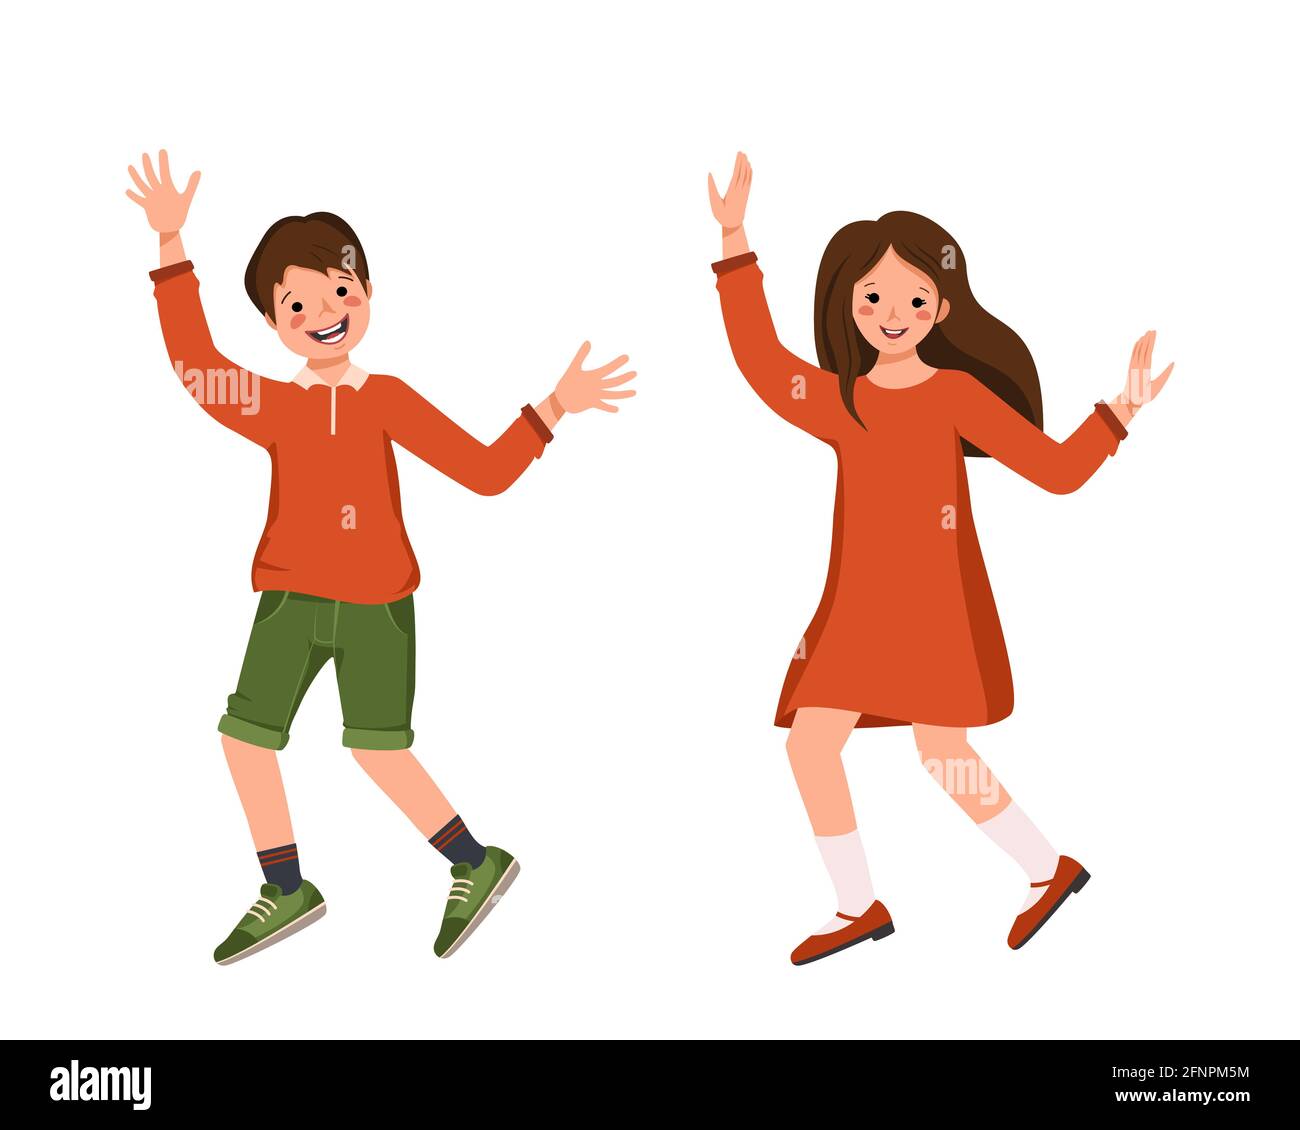 Junge in einem Hemd, Shorts und Mädchen in einem Kleid, Schuhe mit braunen Haaren. Fröhliche lächelnde Kinder tanzen ihre Hände. Teenager mit Gesichtern in legerer Kleidung. Welt Stock Vektor